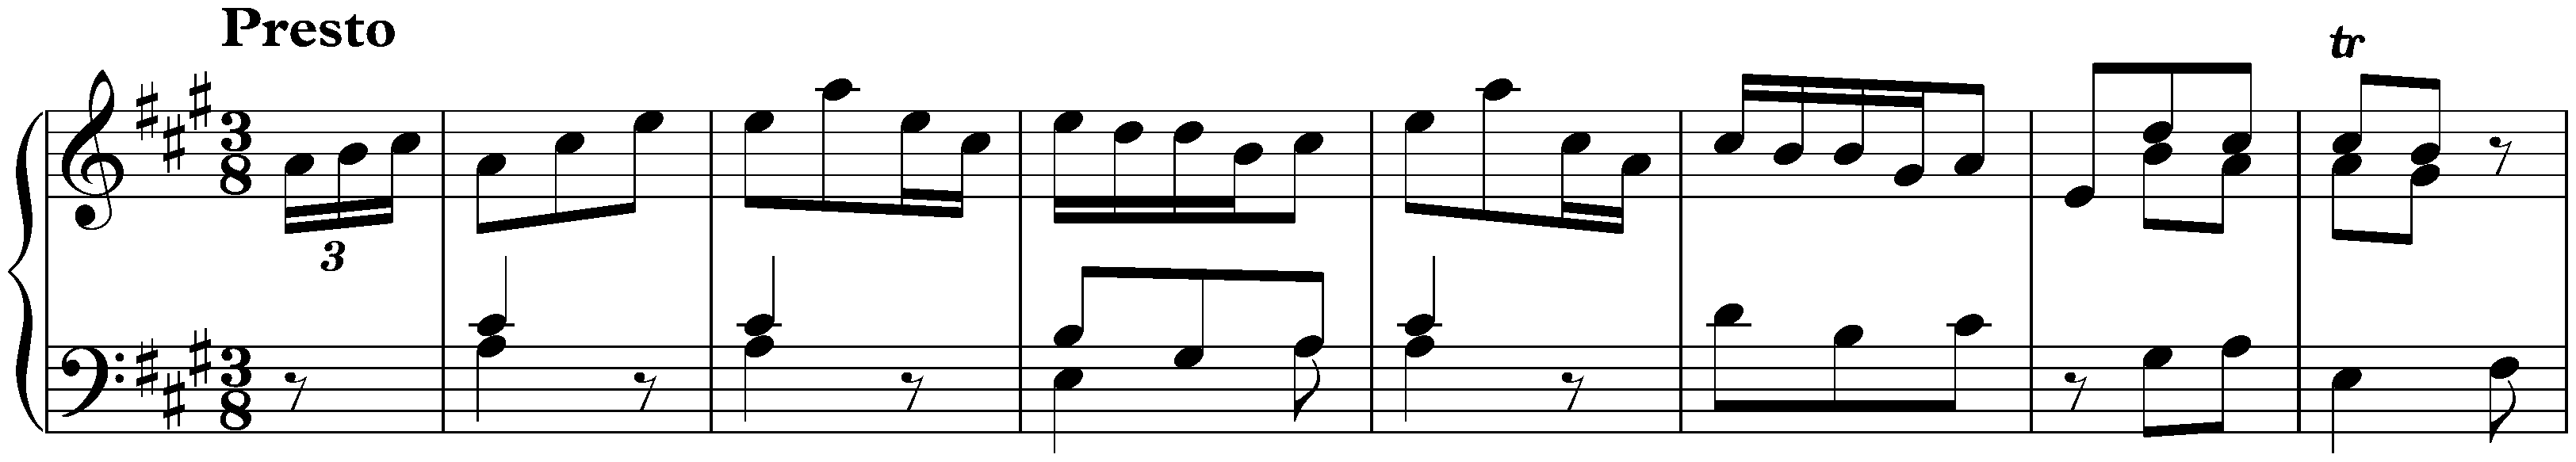 Sonata in A major, Hob. XVI:5; 3. Presto